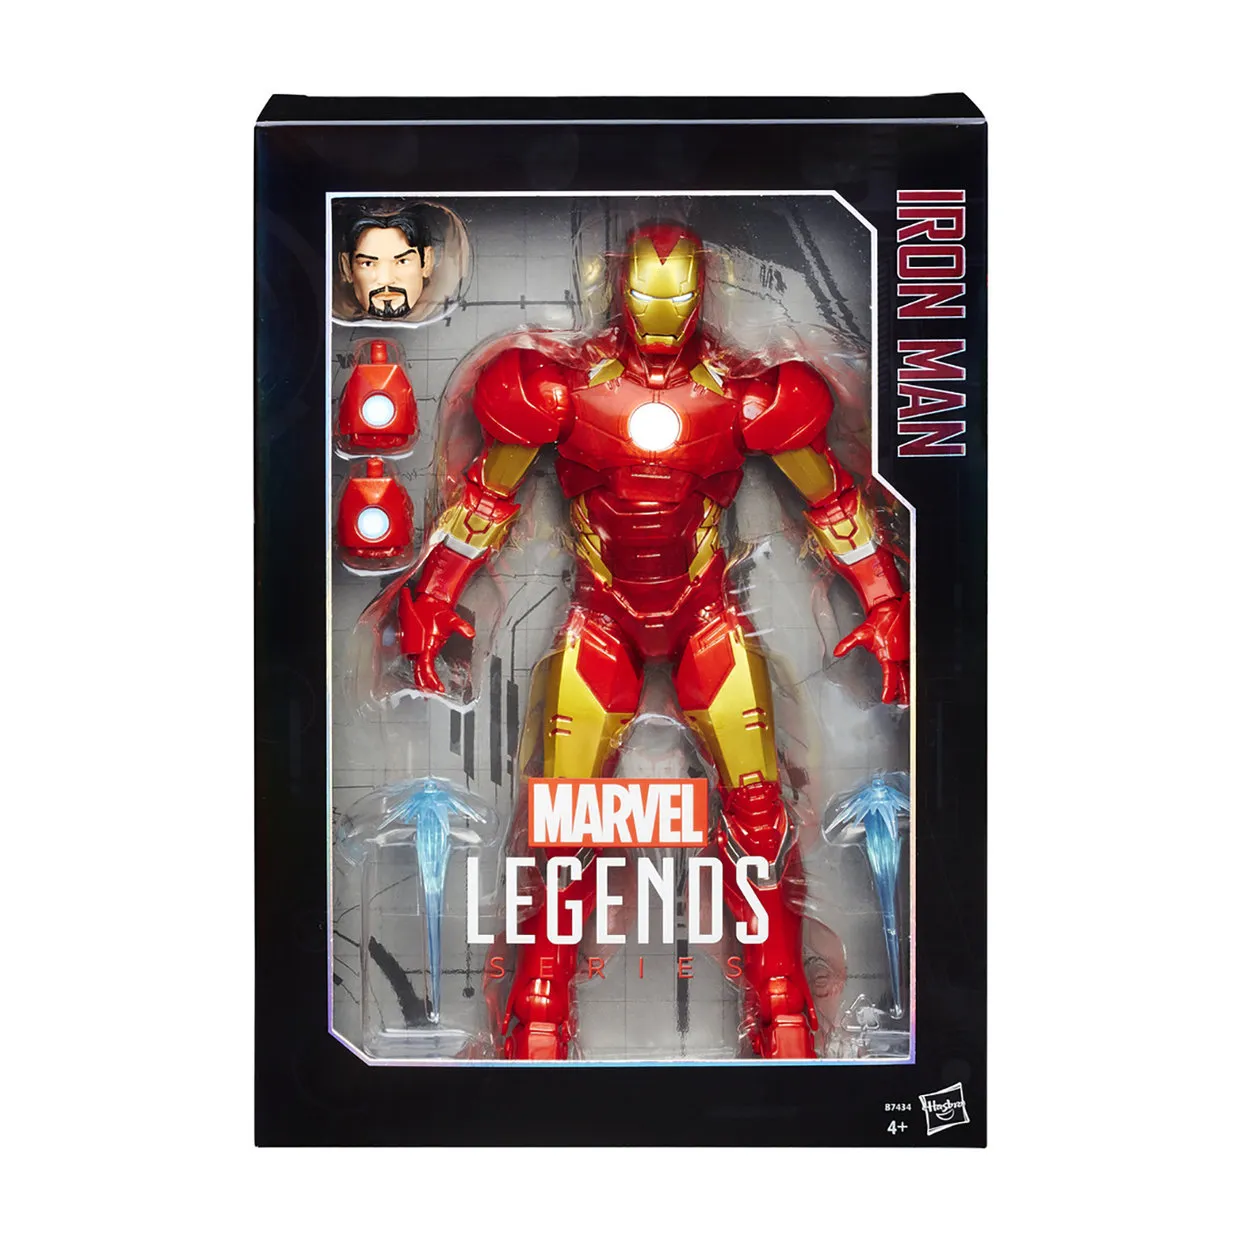 Avengers Legends Iron Man